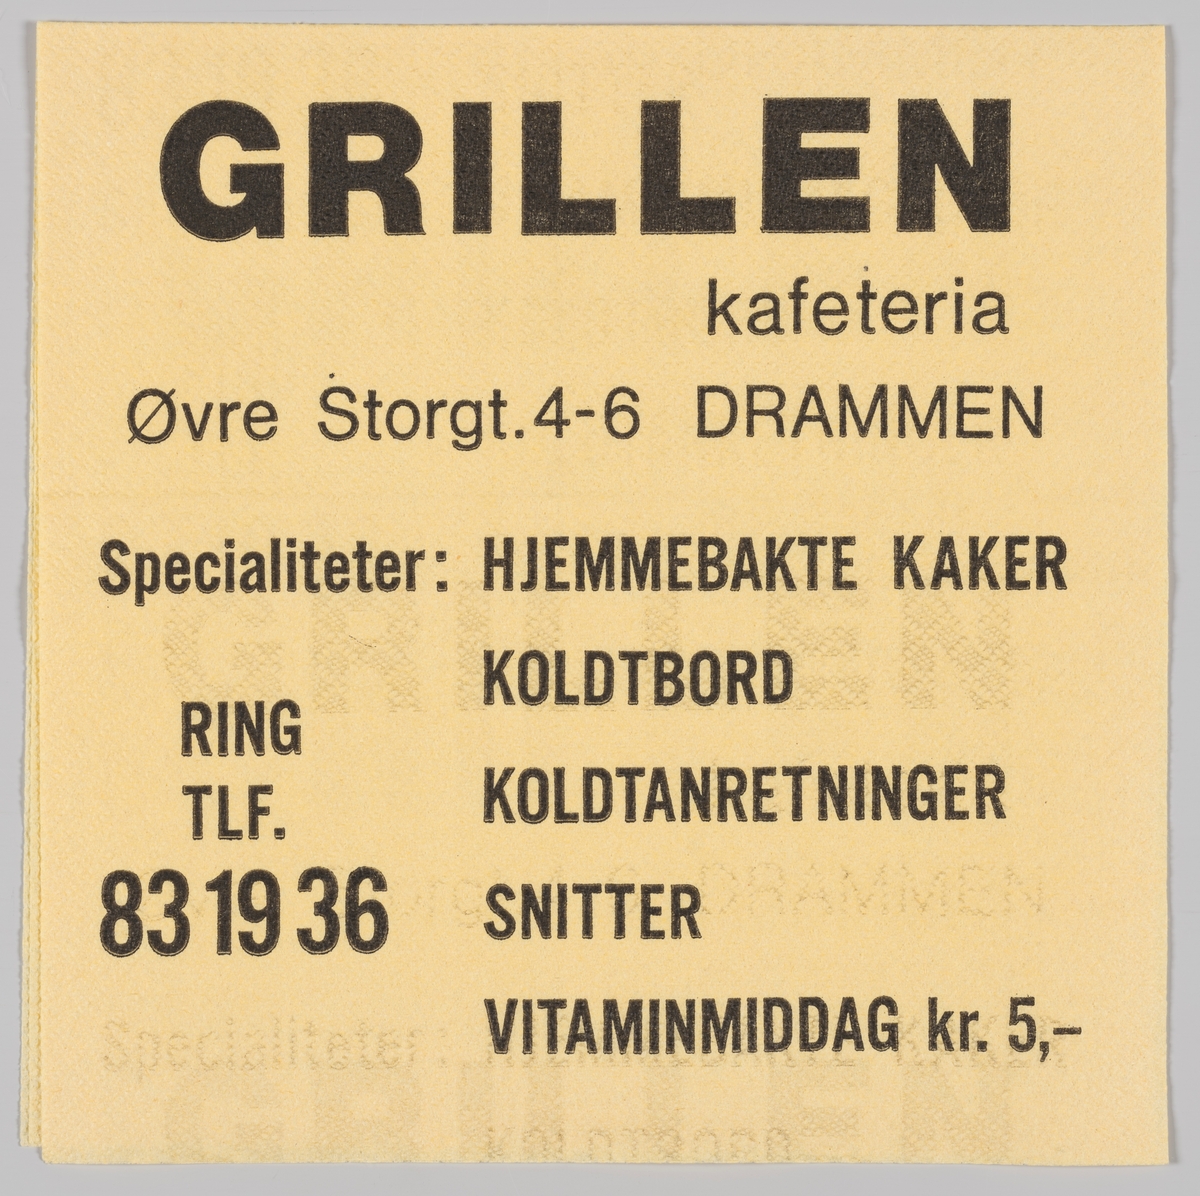 En reklametekst for Grillen kafeteria i Drammen.